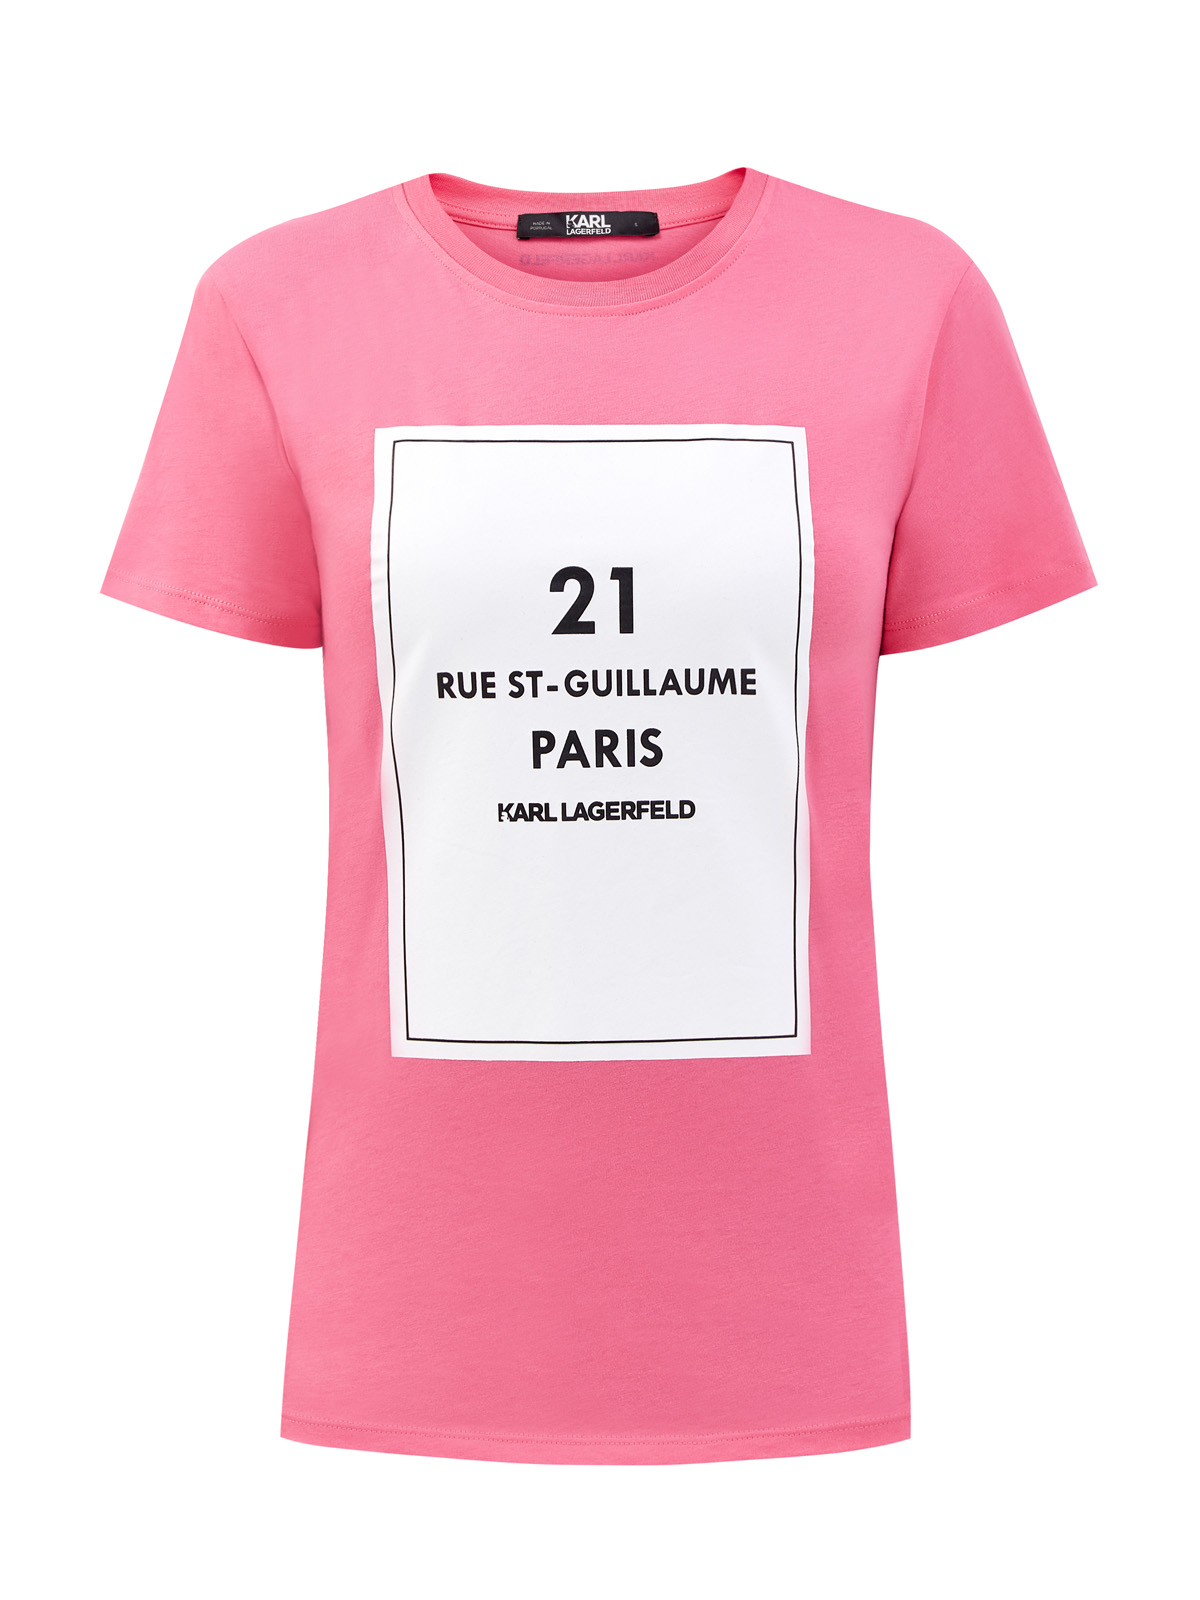 Хлопковая футболка с культовым принтом Rue St-Guillaume KARL LAGERFELD, цвет розовый, размер L;M;S;XS - фото 1